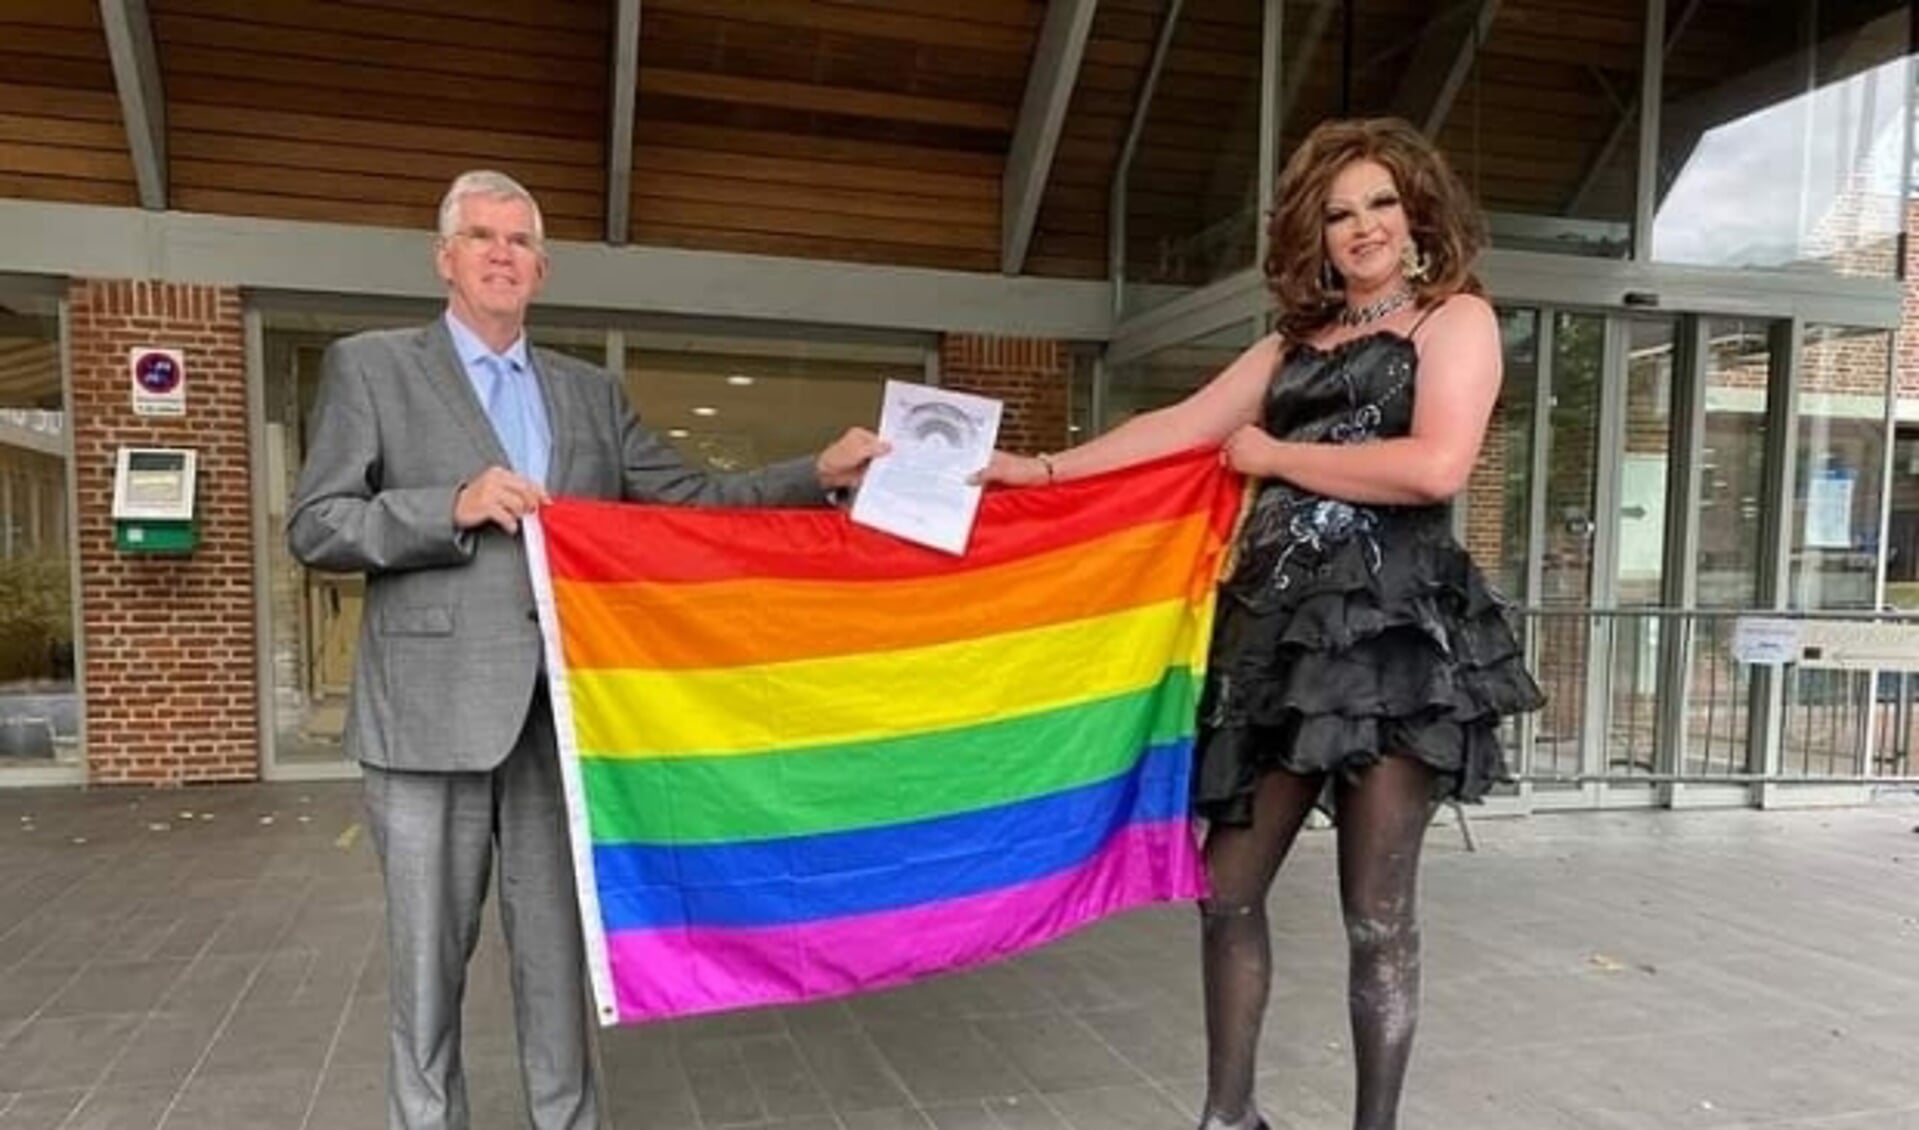 Drag queen Patty Sparkle biedt de regenboogvlag aan burgemeester Baars aan. (foto: Gemeente Ermelo)